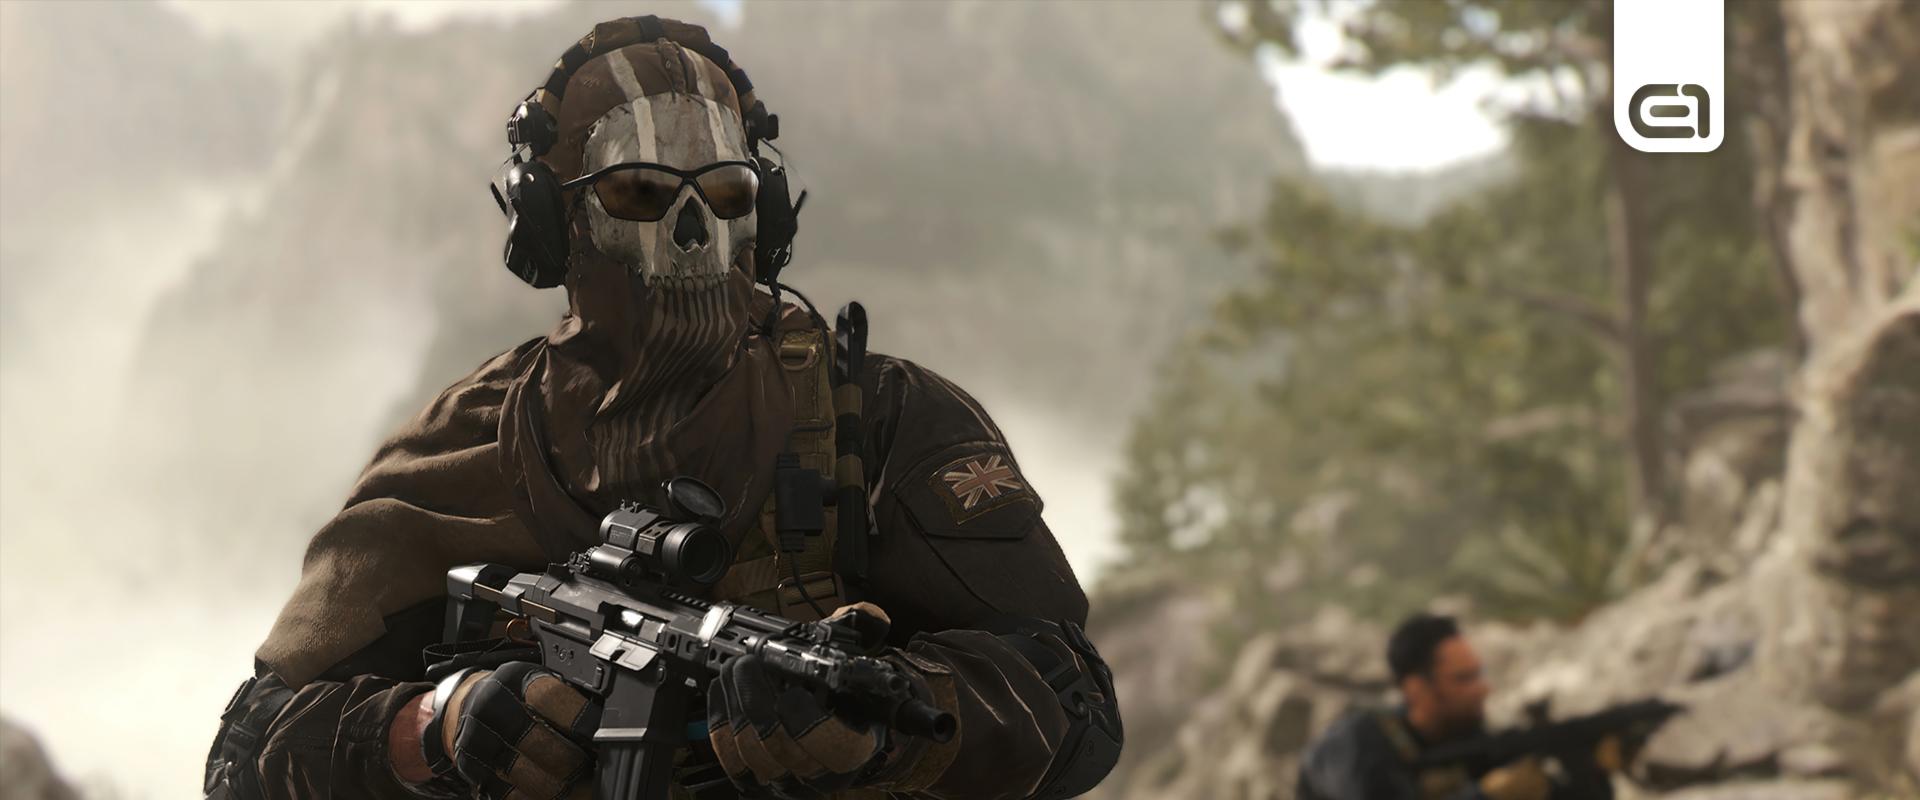 Ekkor próbálhatjuk majd ki az új Call of Duty Modern Warfare 3-at!